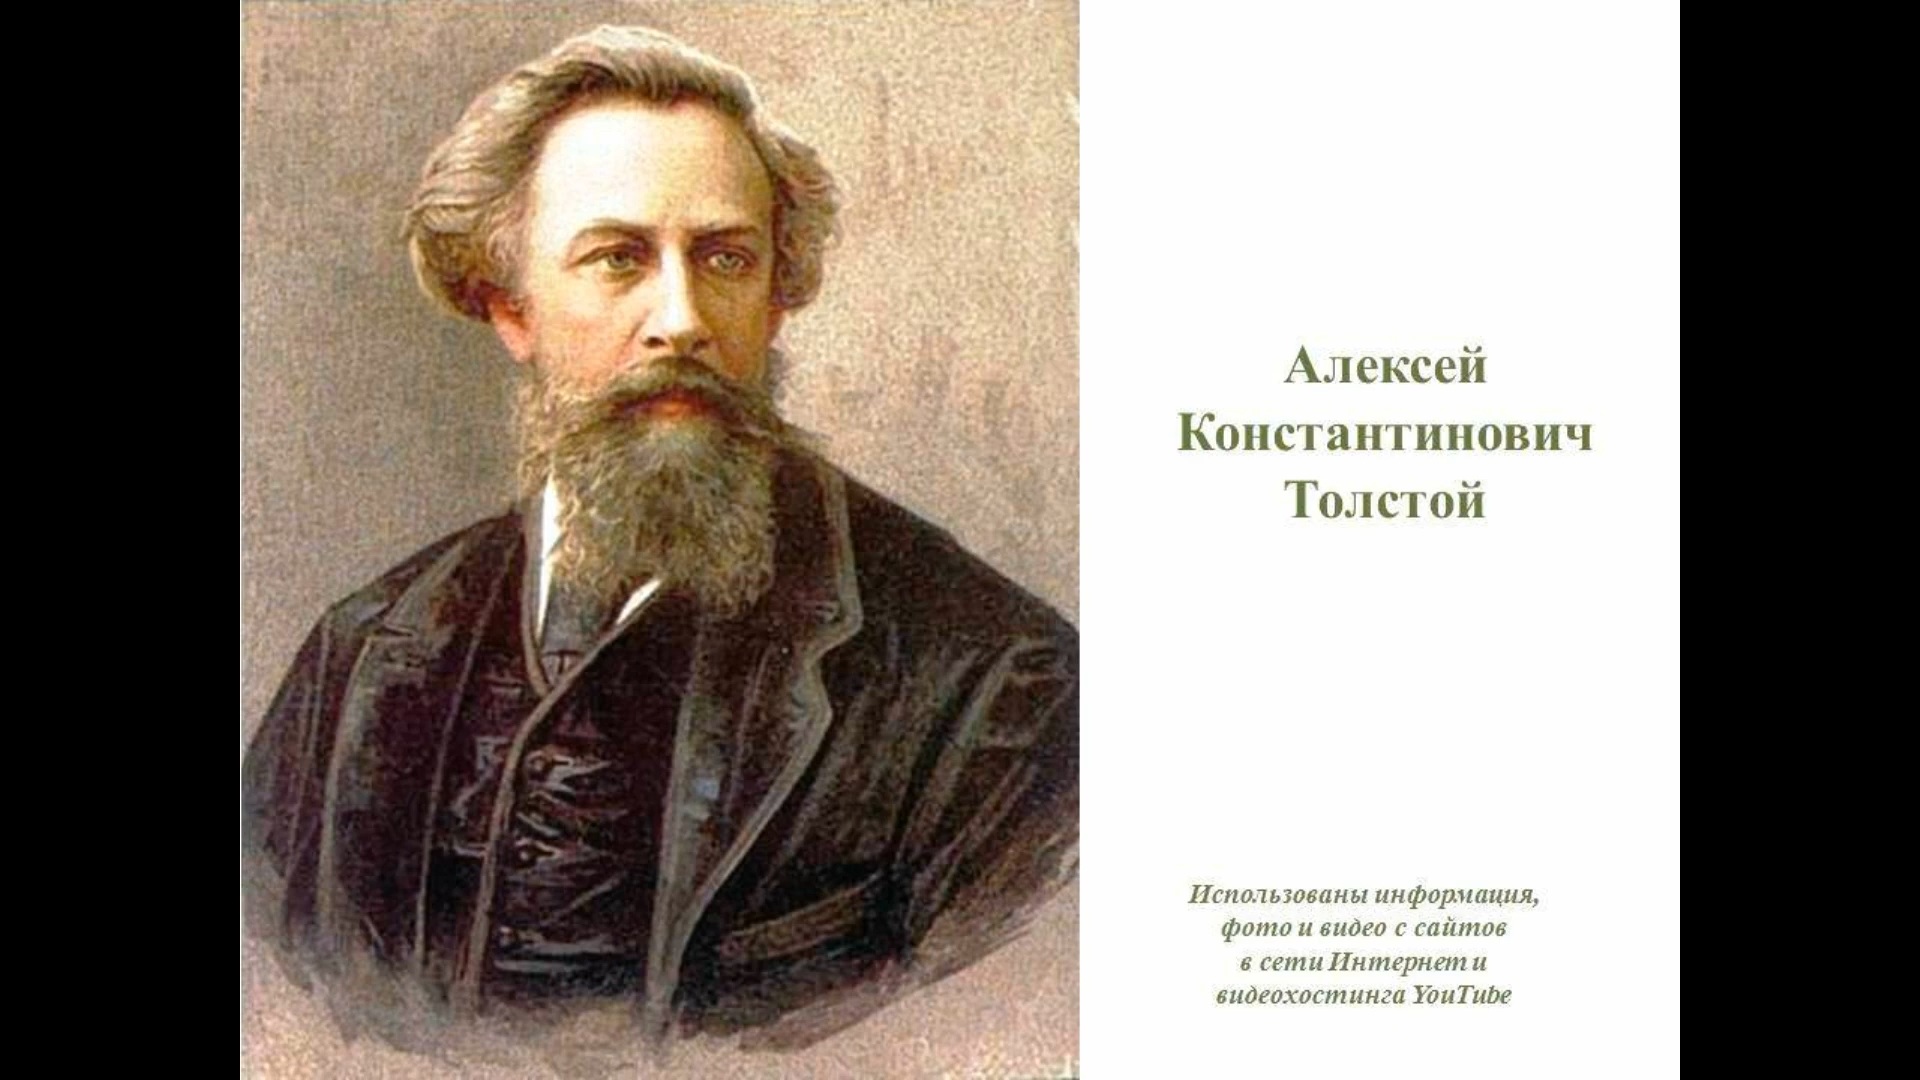 Имя писателя толстого. Портрет Алексея Константиновича Толстого.